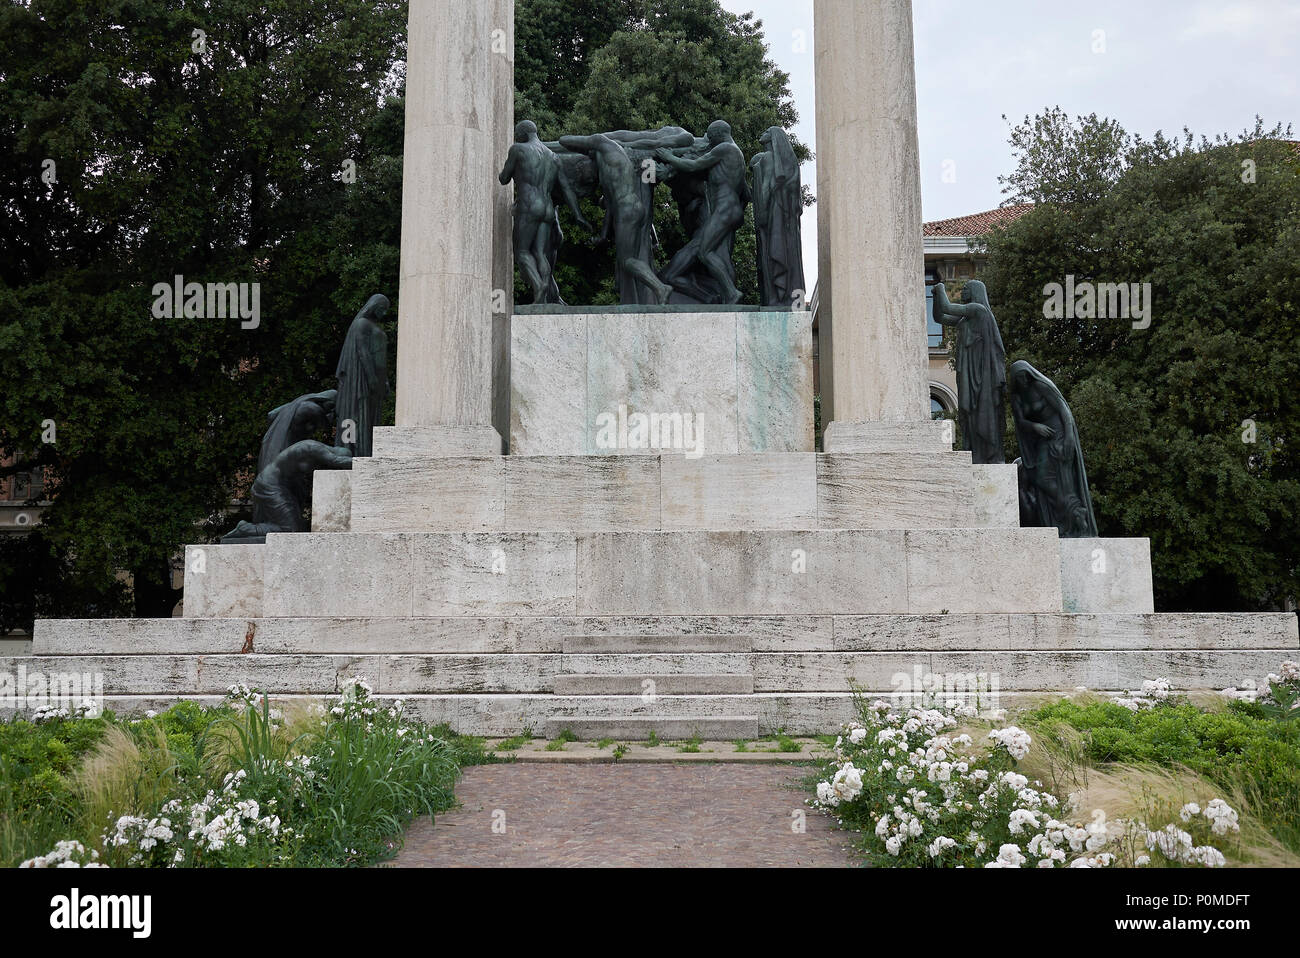 Treviso, Italy - May 29, 2018: View of Monumento ai Caduti (Gloria ...